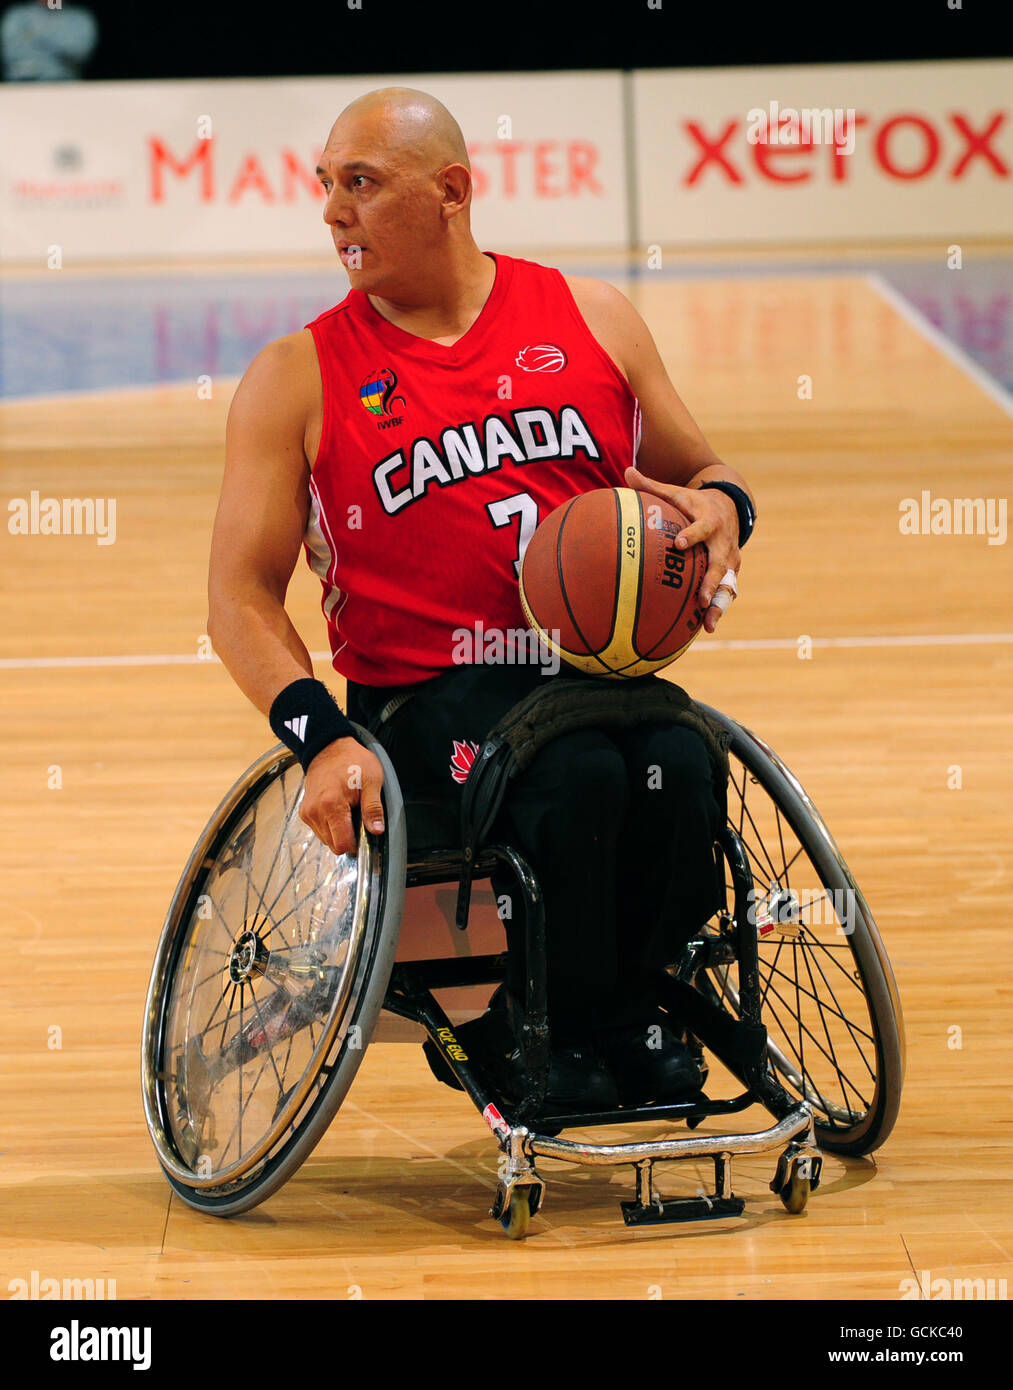 Richard Peter, du Canada, en action pendant le basketball en fauteuil roulant à la coupe du monde paralympique BT à Sport City, Manchester. Banque D'Images